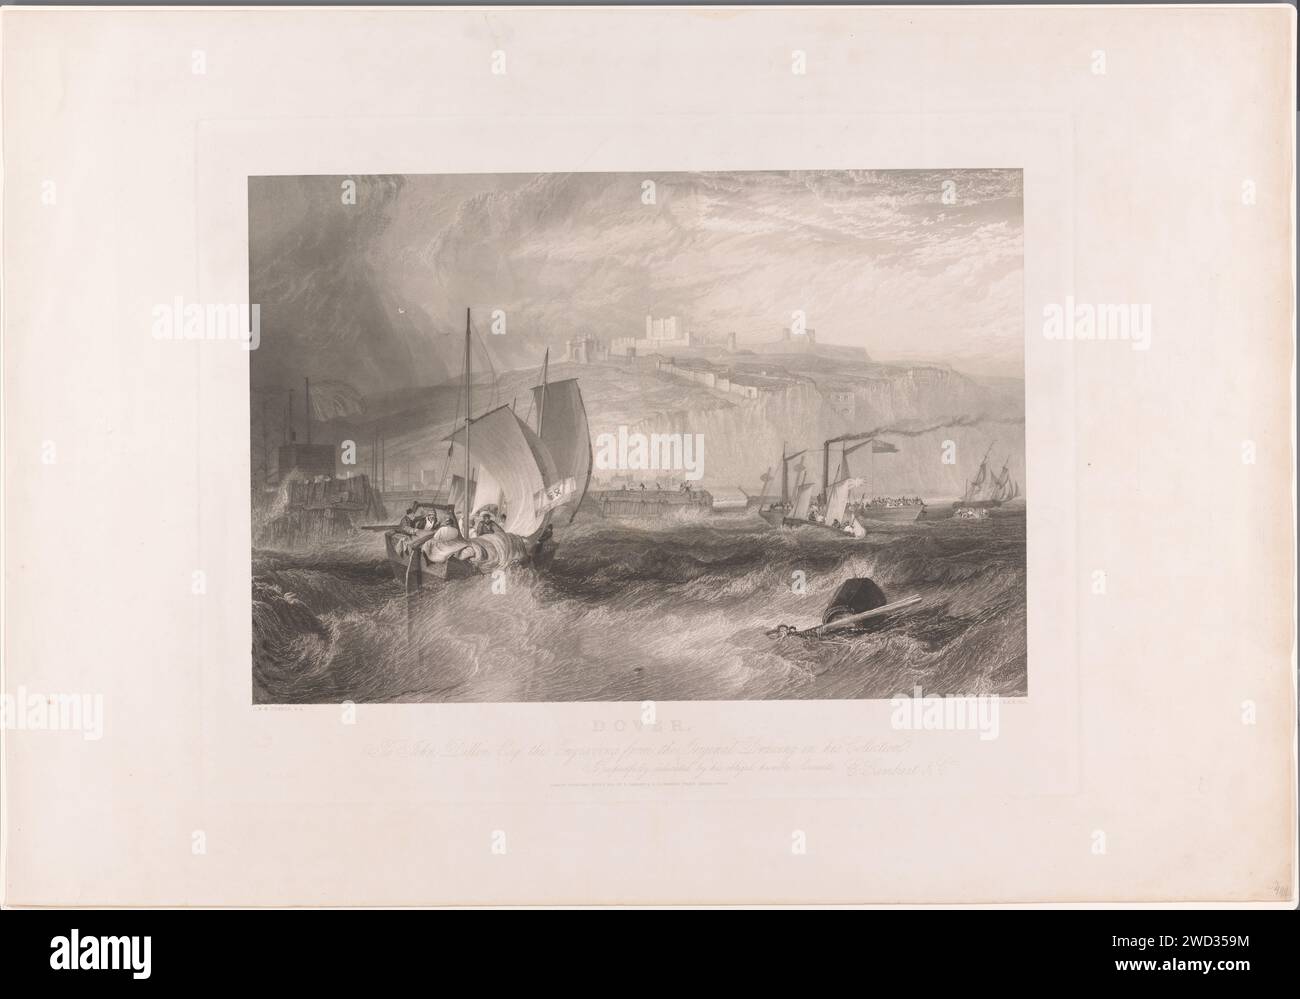 Navires à Douvres par mauvais temps, James Tibbits Willmore, d'après Joseph Mallord William Turner, 1851 imprimeur : Englandeditor : London papier gravure / gravure voilier, voilier. côte rocheuse. tempête en mer Banque D'Images